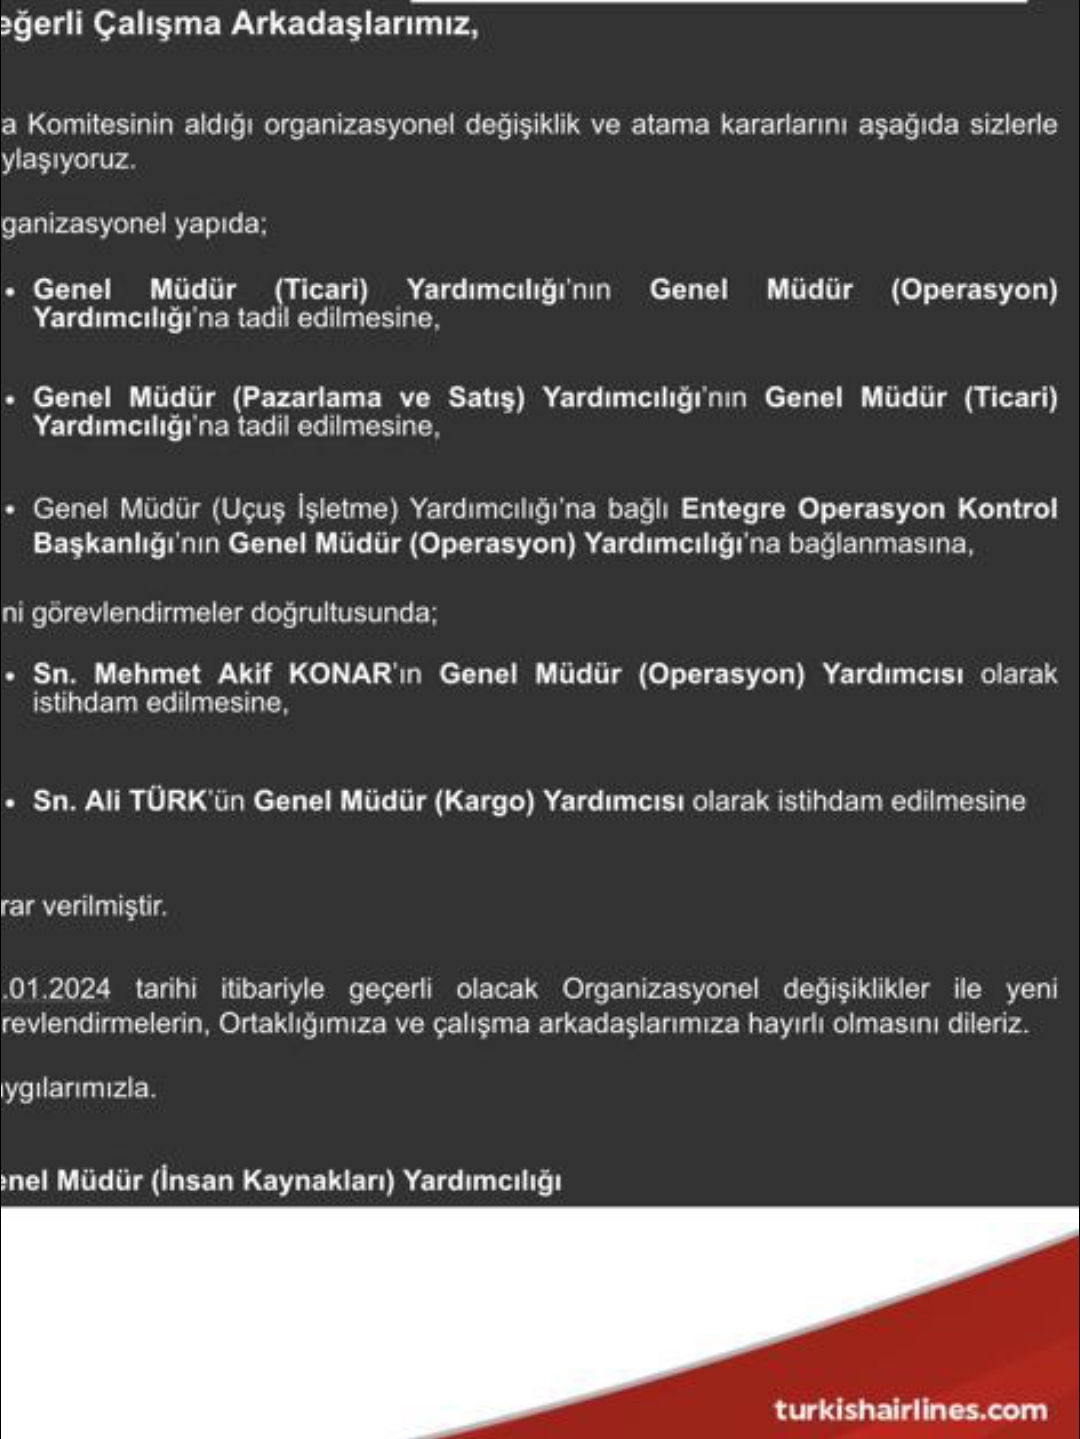 Ali Türk ve Akif Konar'a Yeni Görev 19 Mayıs 2024